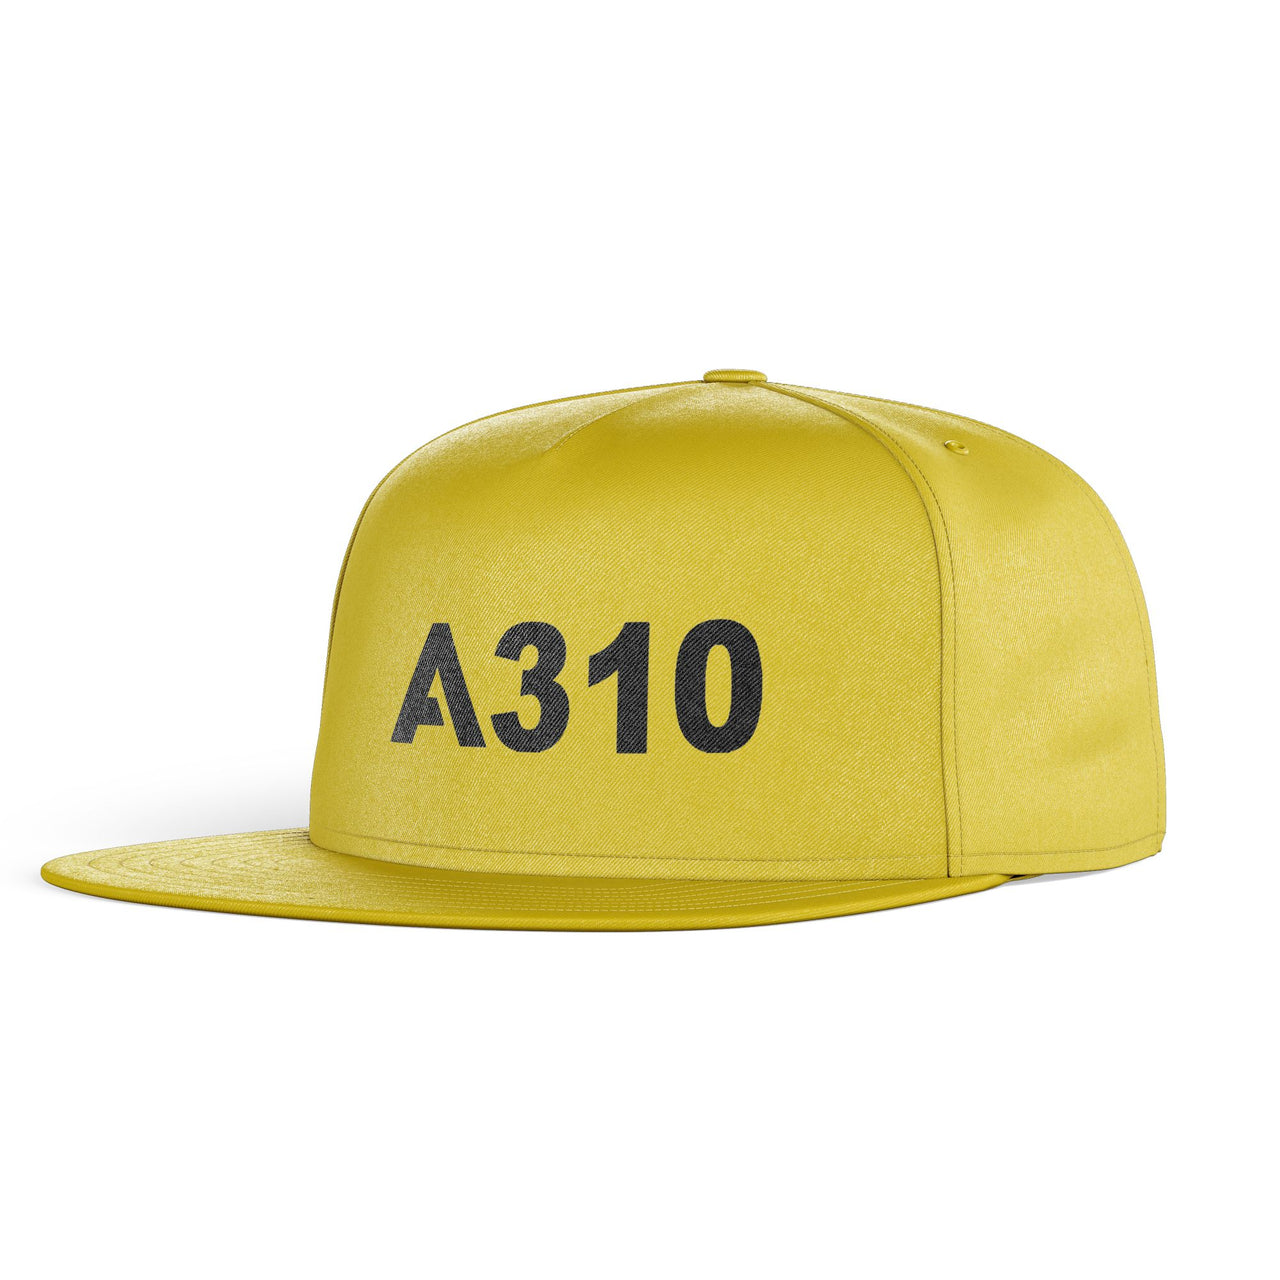 A310 Flat Text Designed Snapback Caps & Hats